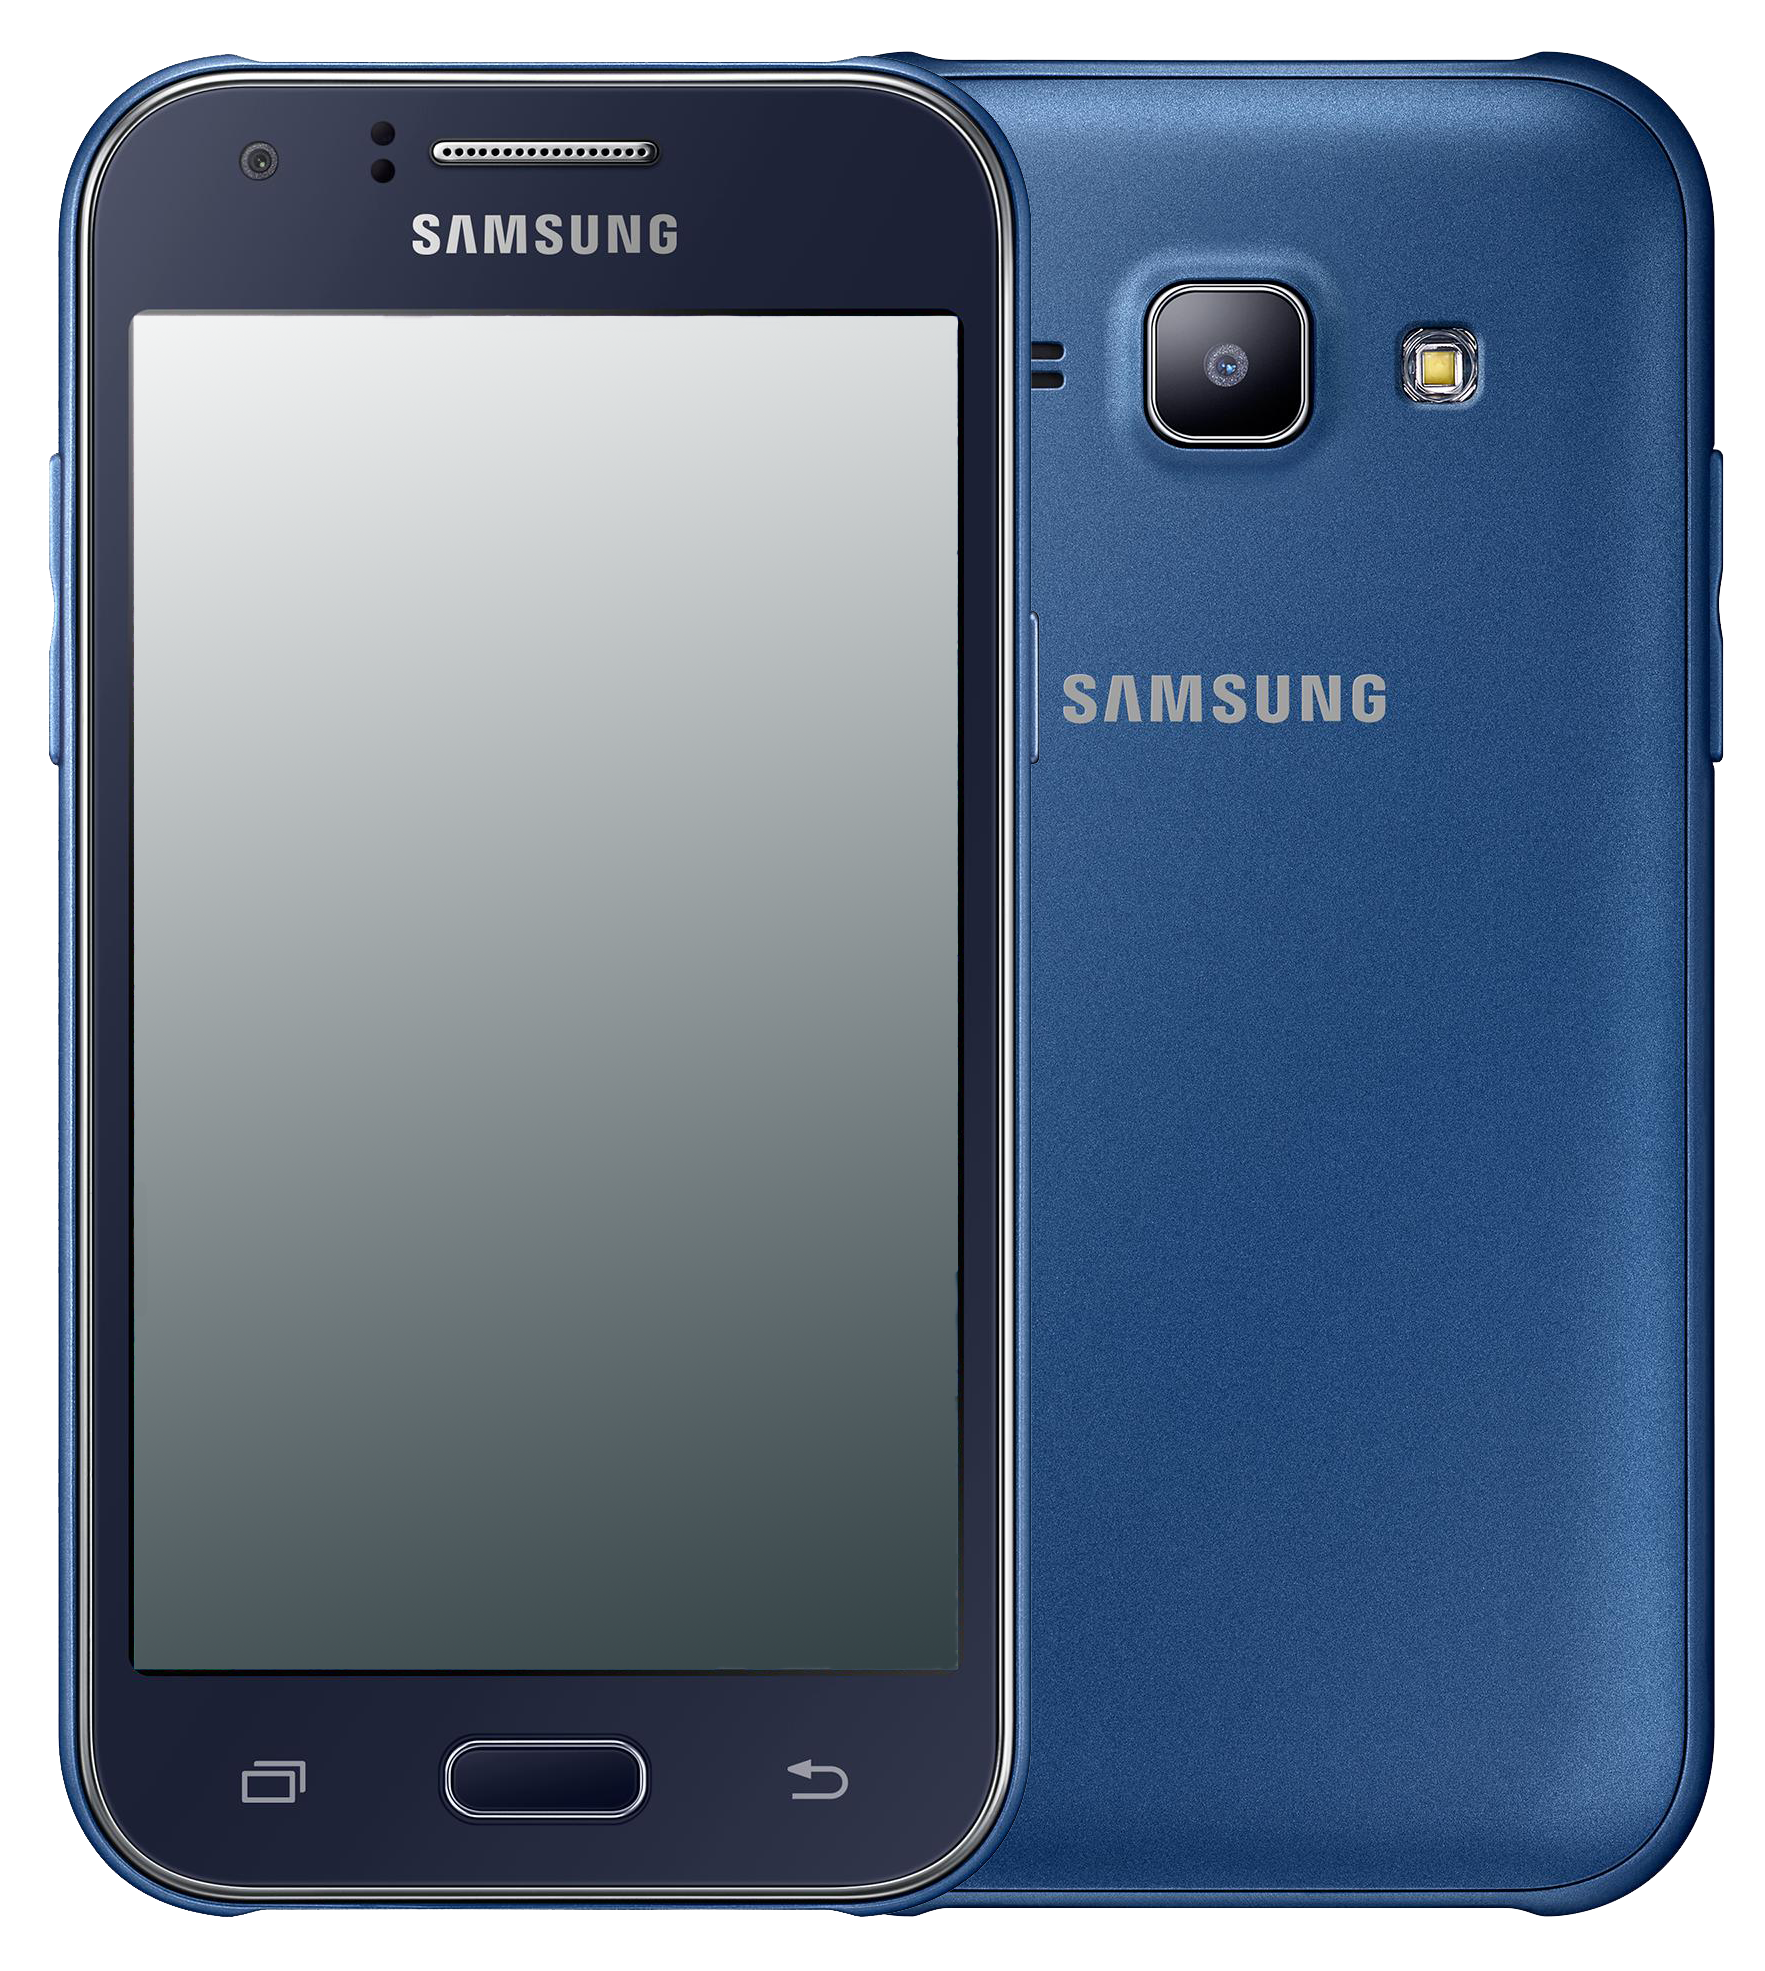 Samsung Galaxy J1 J100H blau - Ohne Vertrag